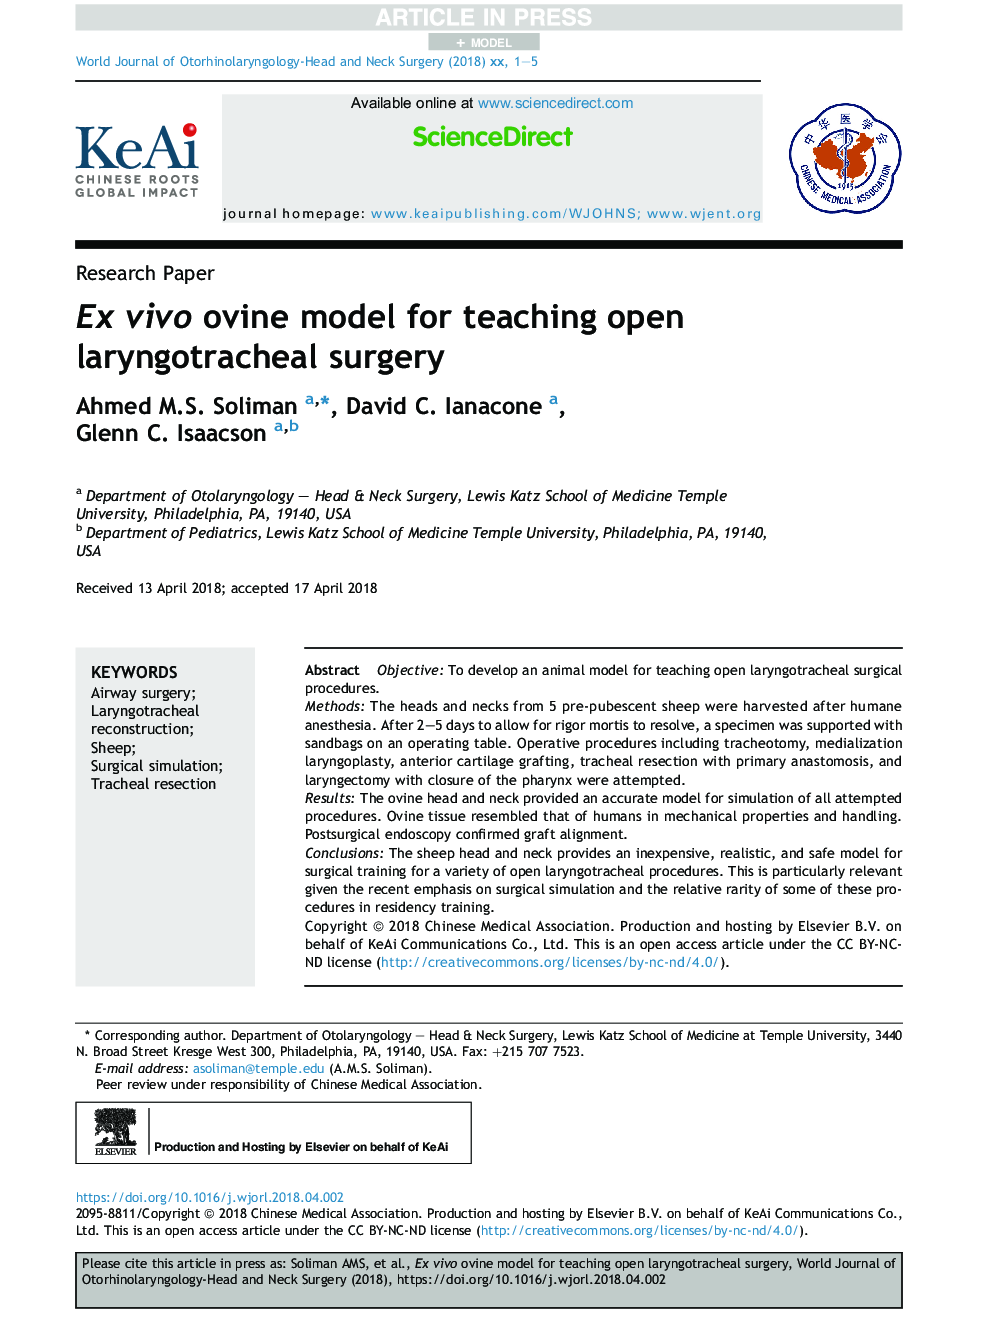 Ex vivo ovine model for teaching open laryngotracheal surgery